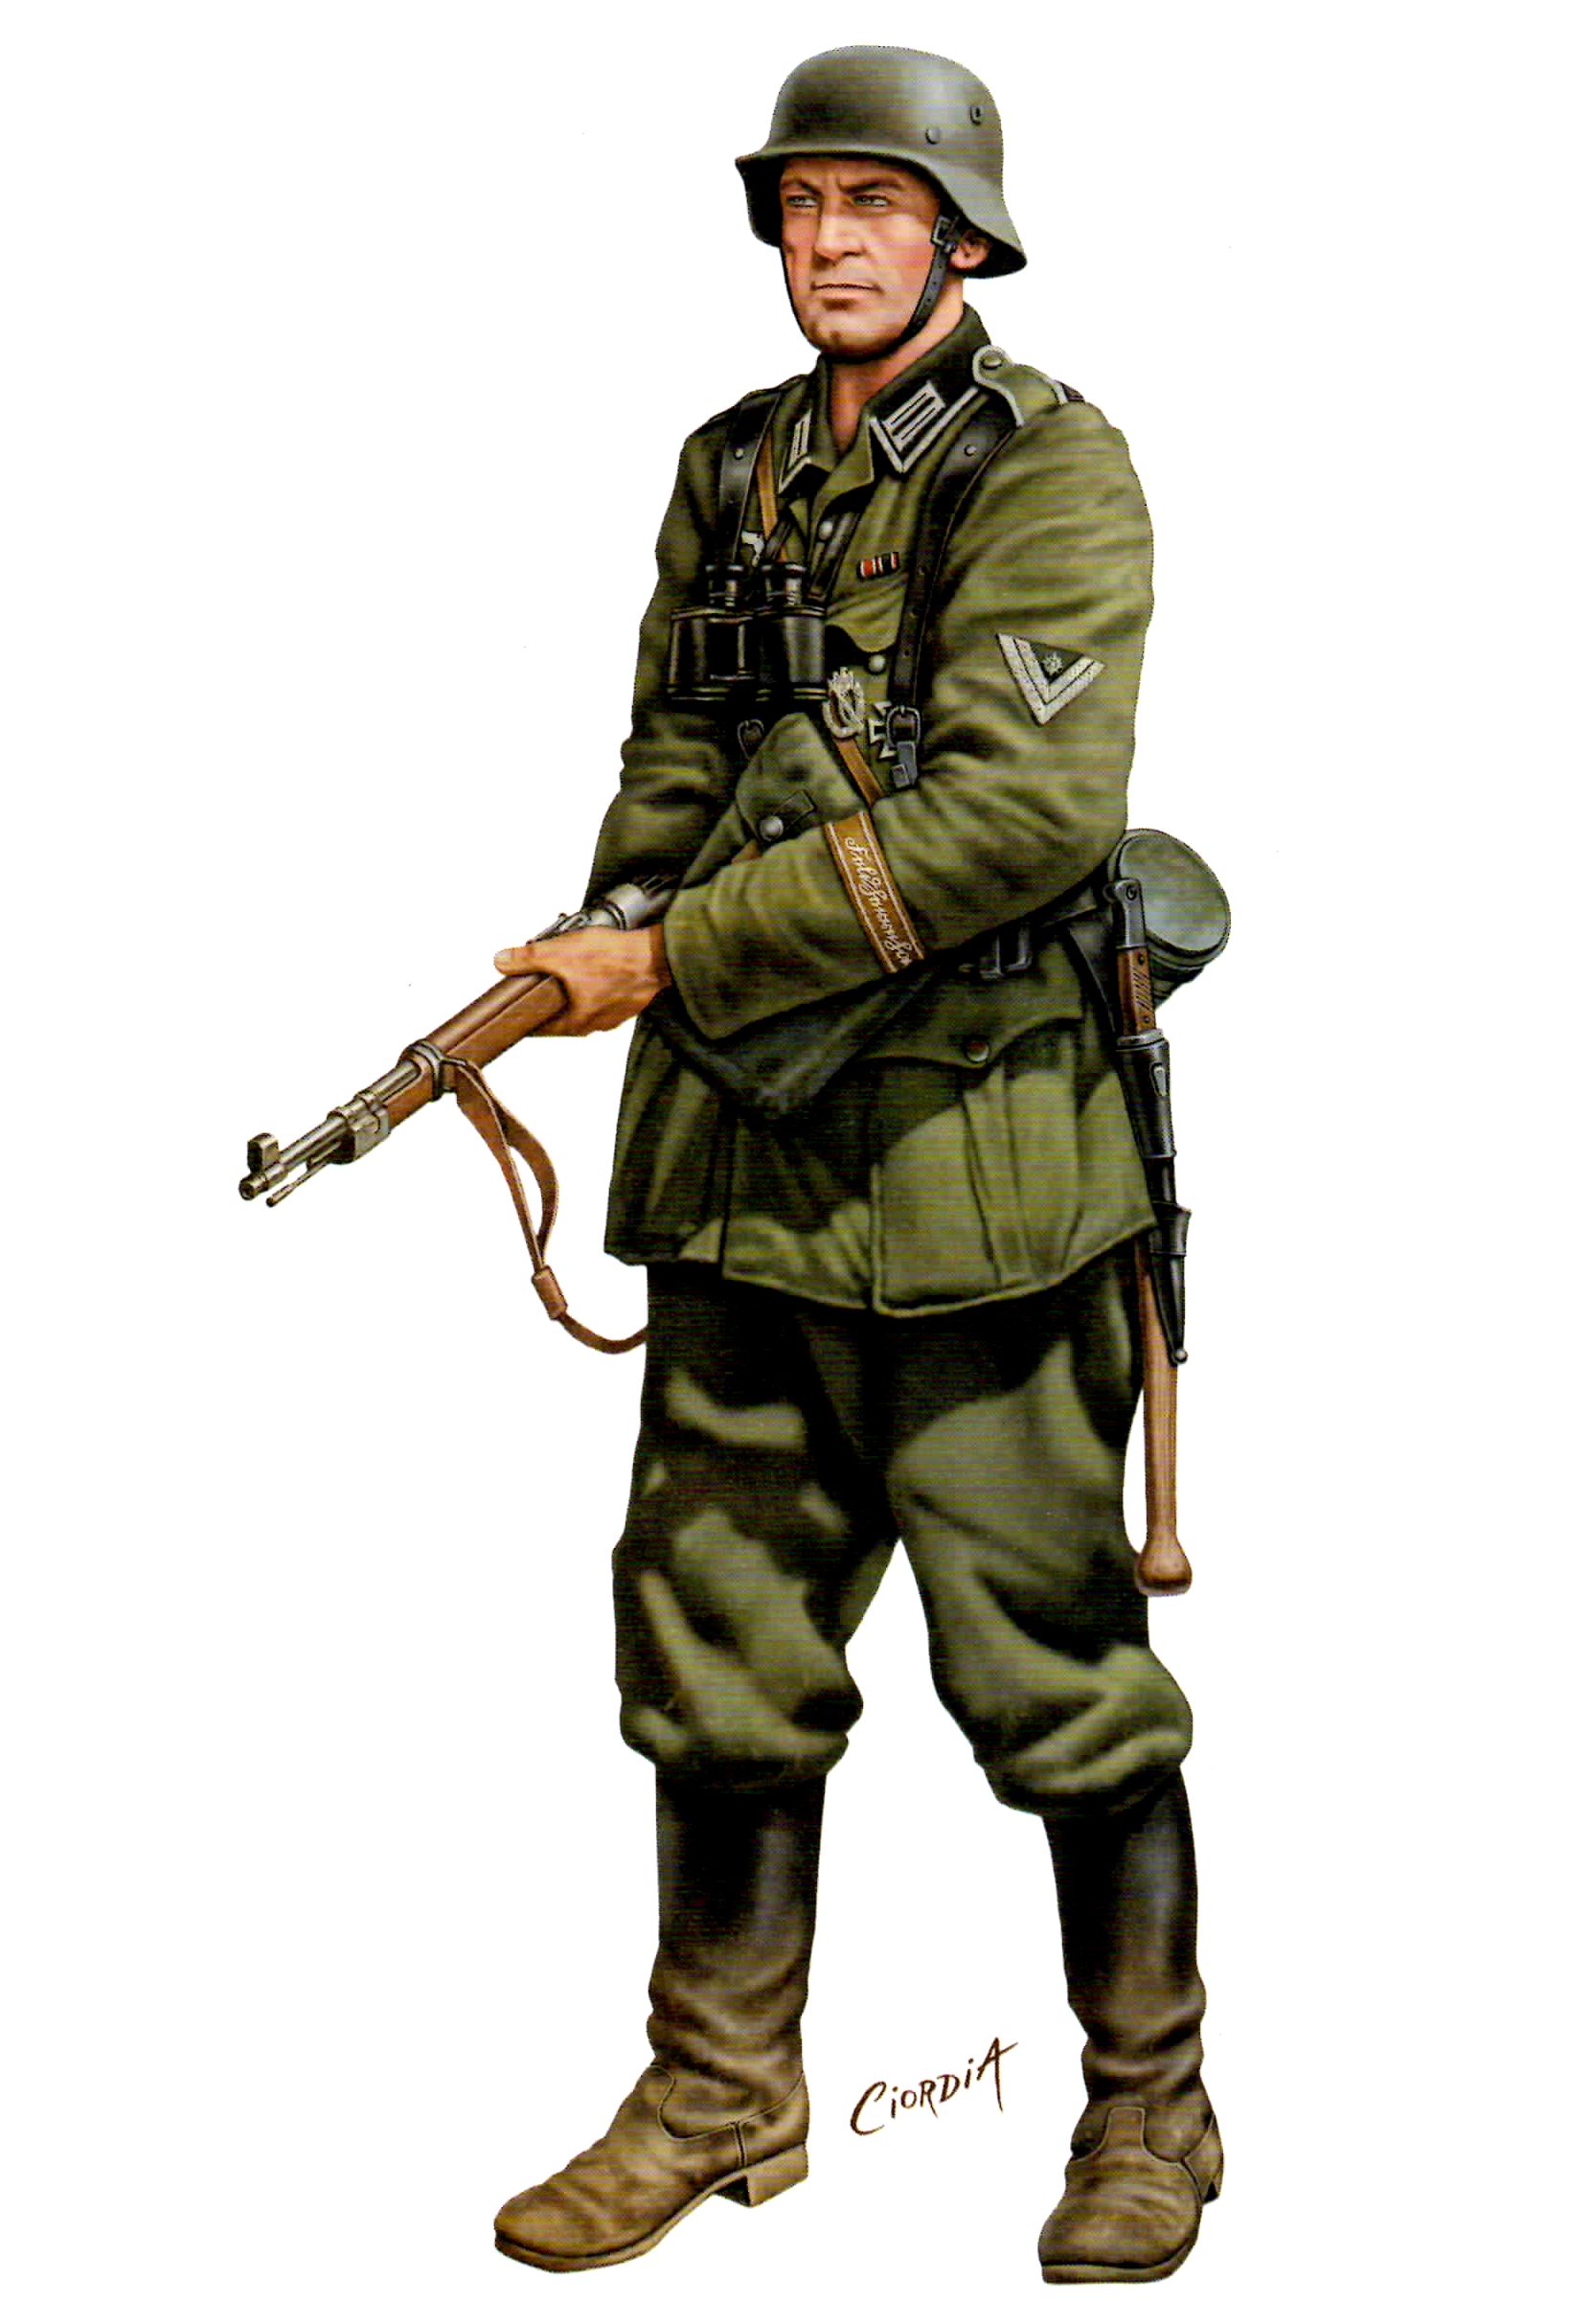 Ciordia Juan Carlos. Немецкие солдаты.